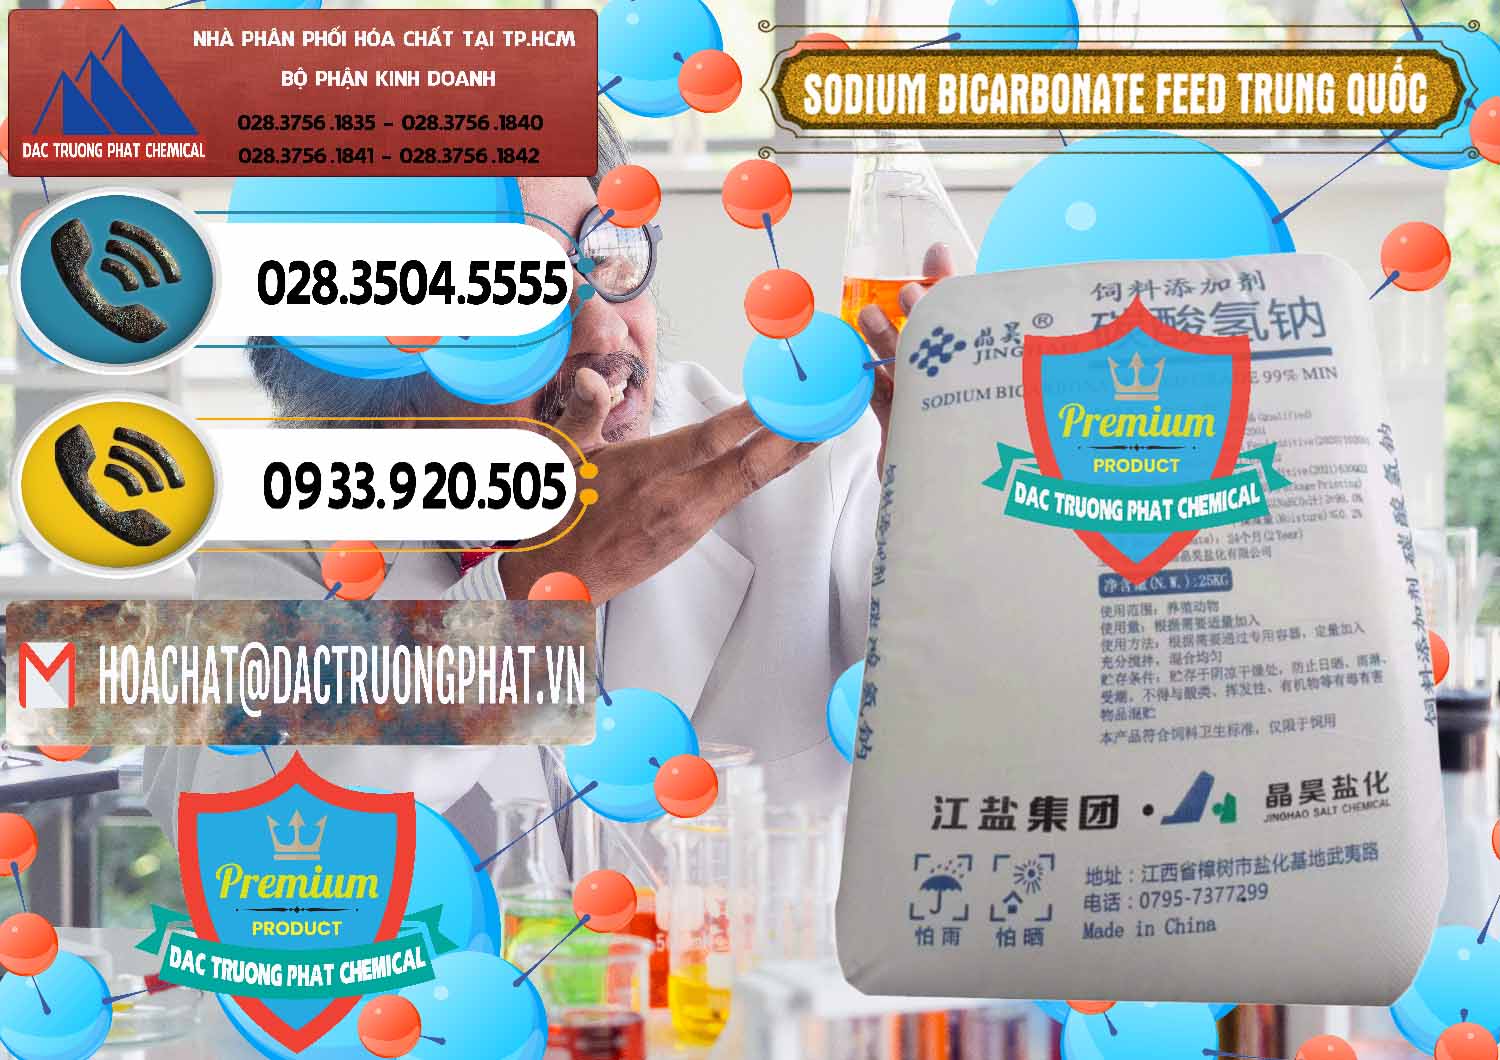 Cty chuyên phân phối và bán Sodium Bicarbonate – Bicar NaHCO3 Feed Jing Hao Trung Quốc China - 0380 - Bán _ phân phối hóa chất tại TP.HCM - hoachatdetnhuom.vn